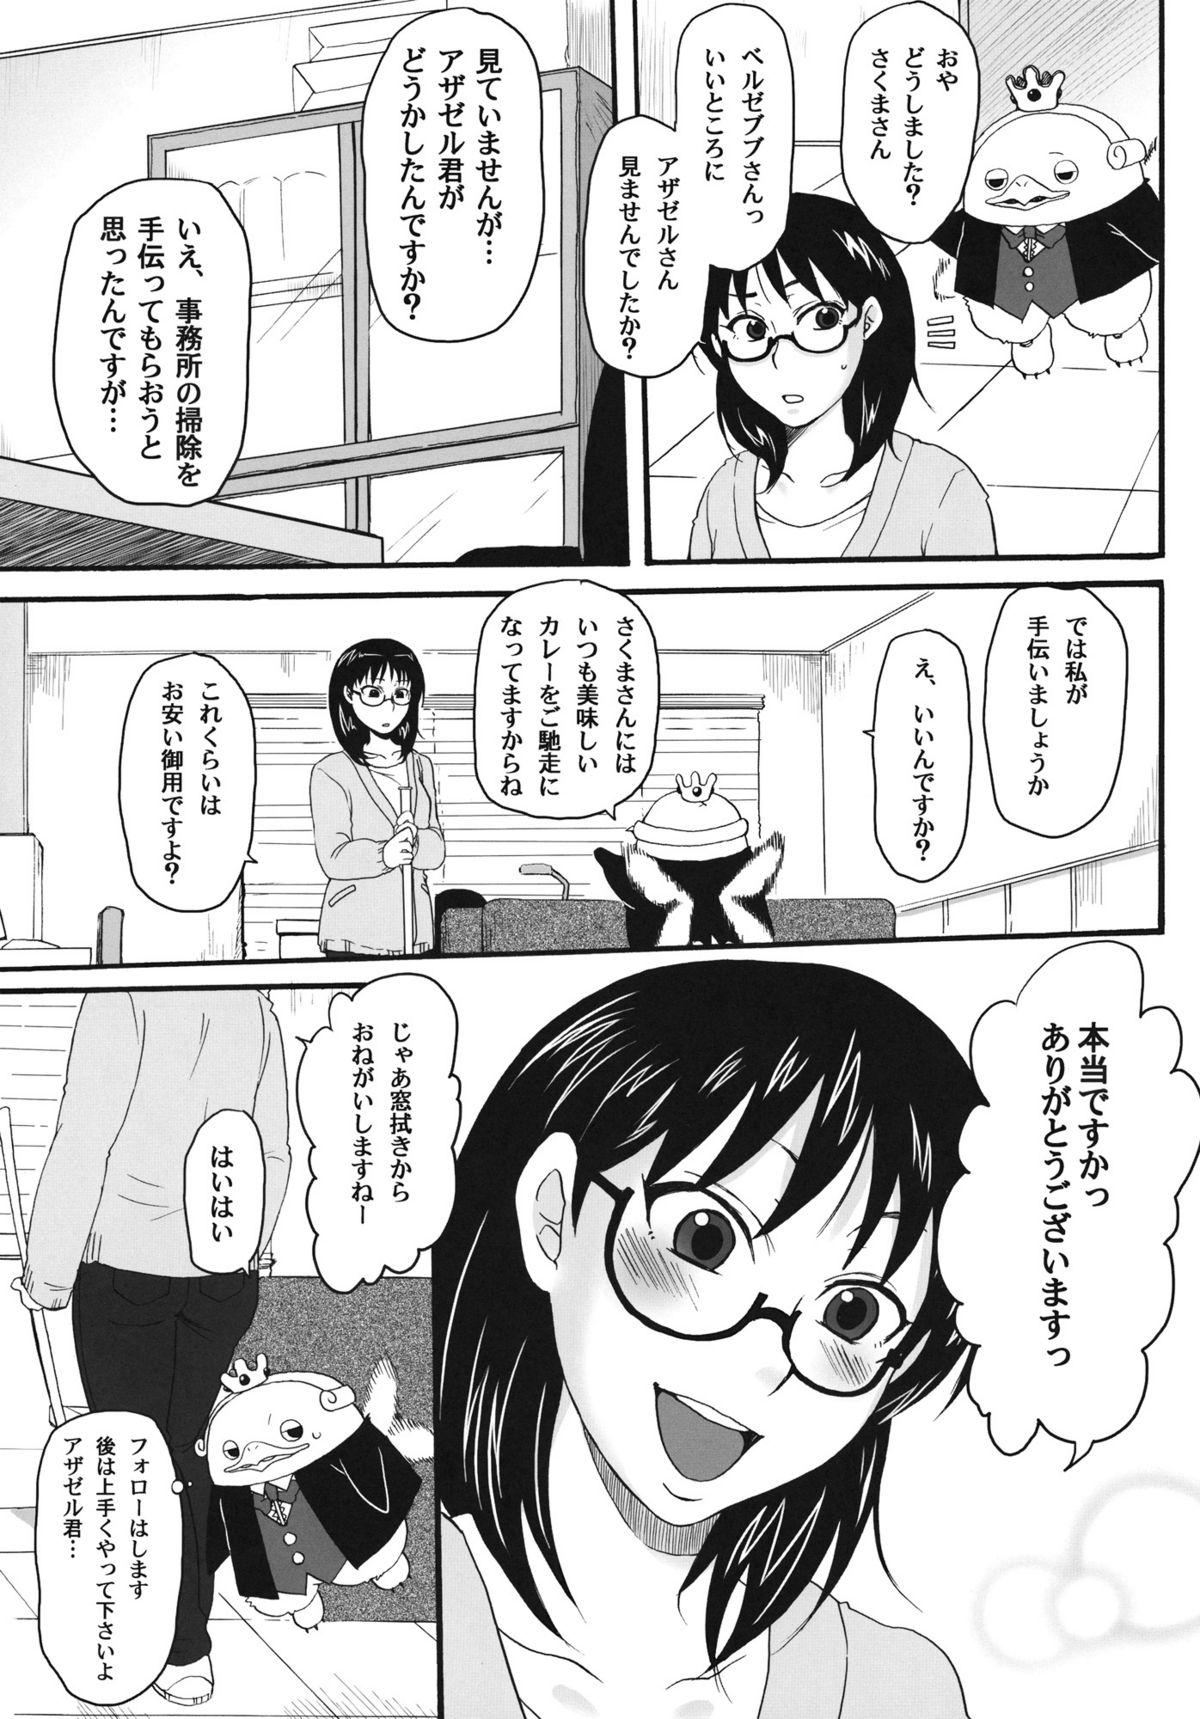 Pornstar Nerawaretemasuyo, Sakuma-san. - Yondemasuyo azazel-san Made - Page 4